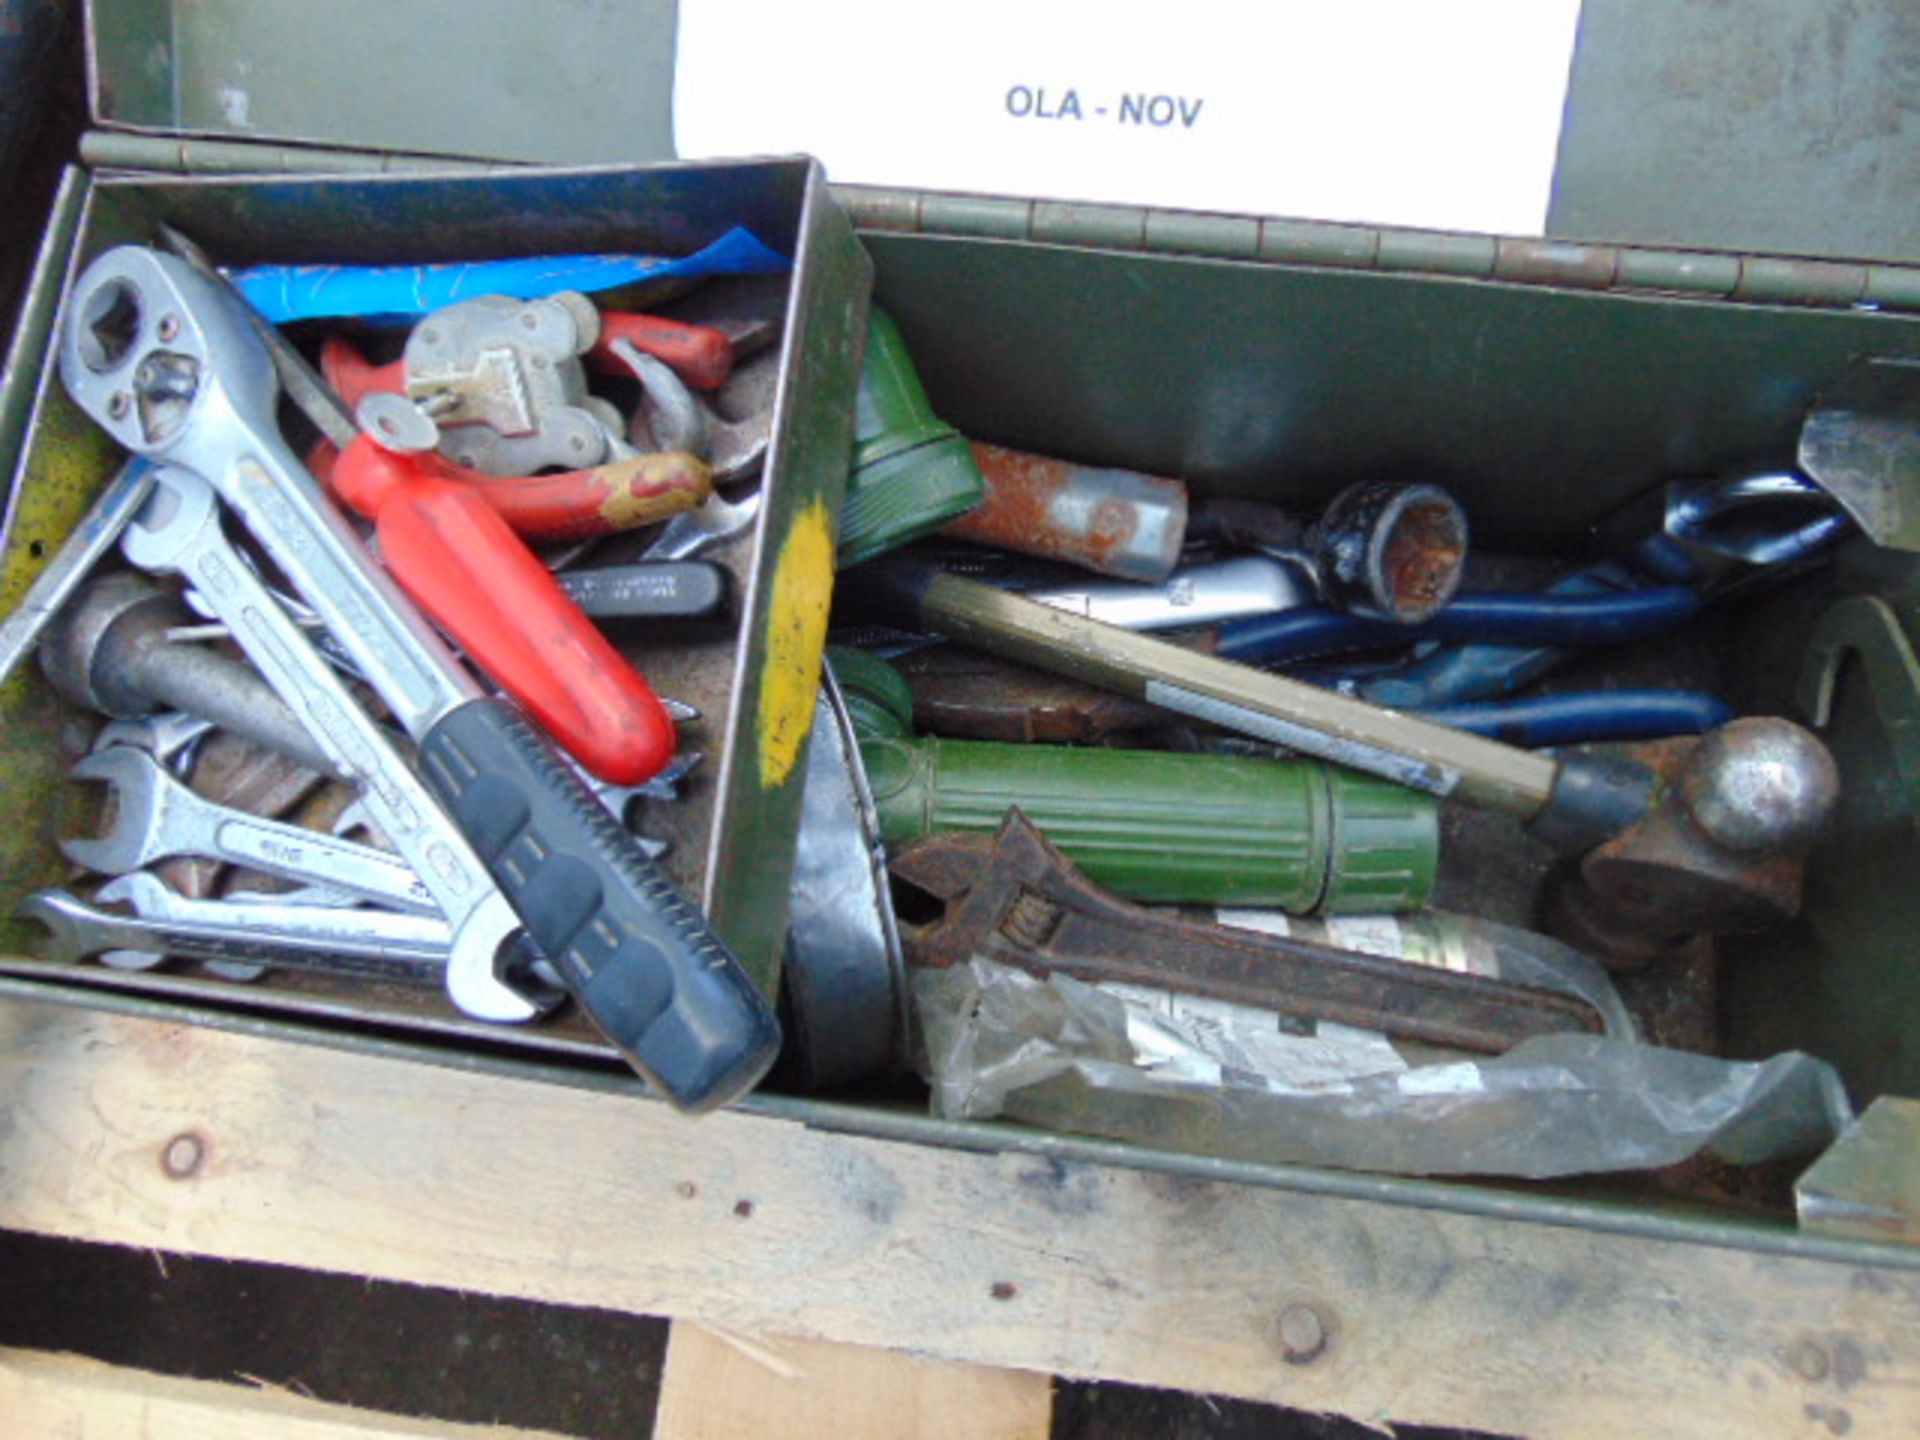 V M Mechanics tool box c/w tools as shown - Image 2 of 3